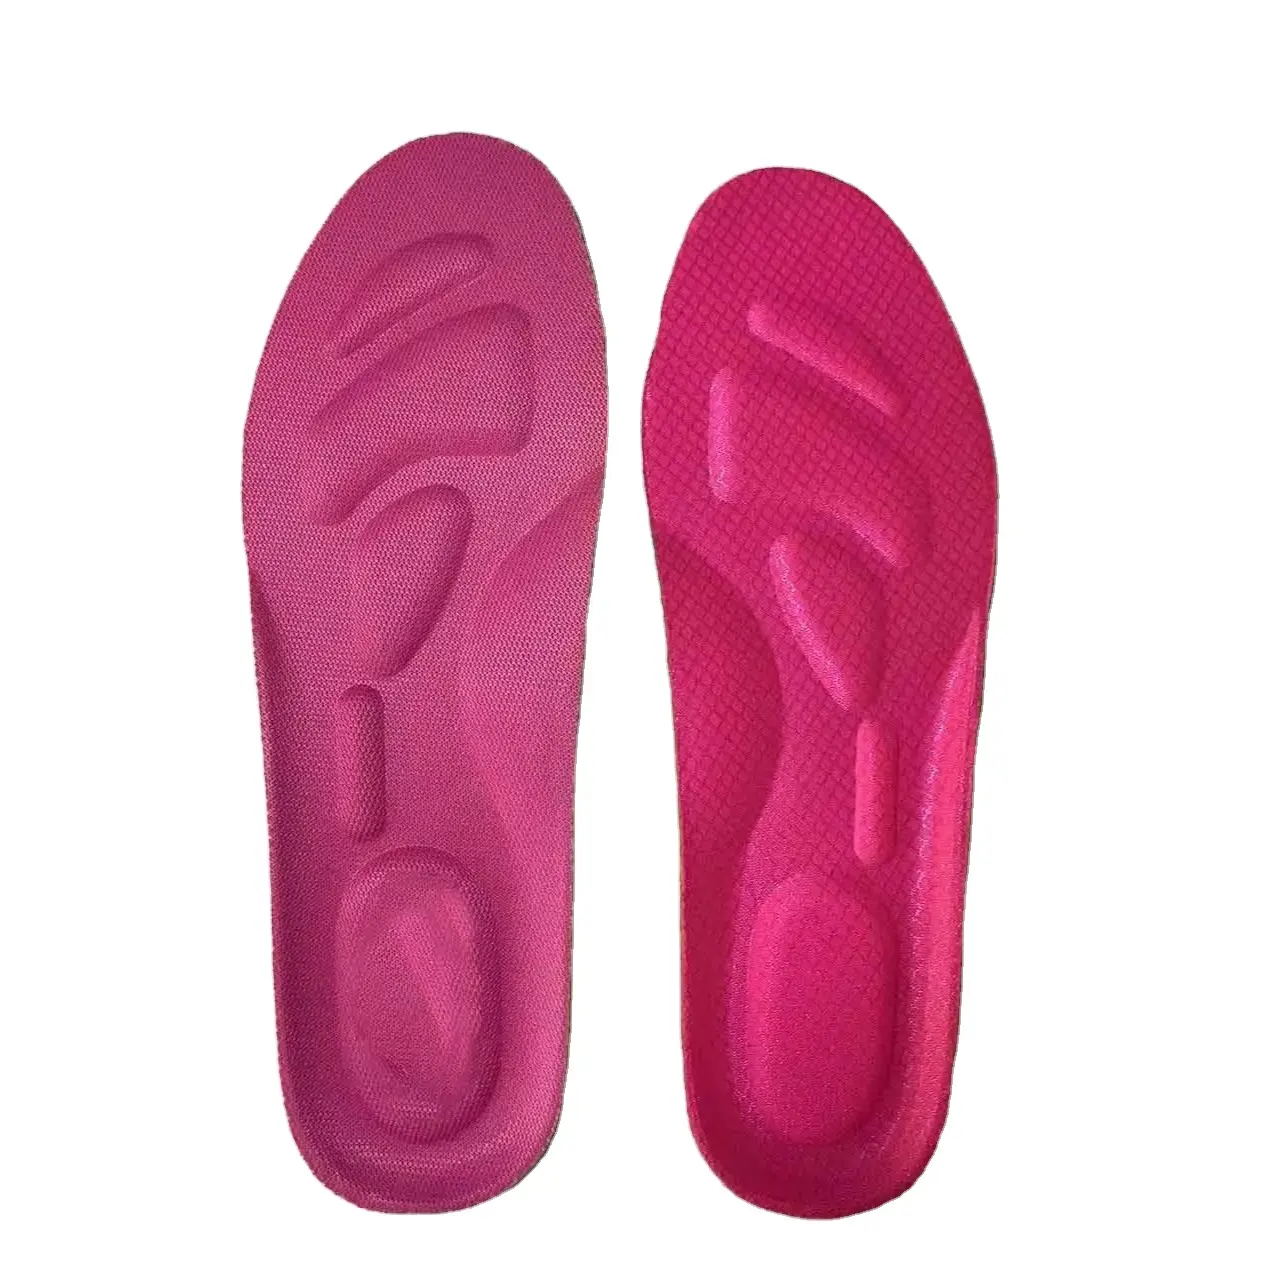 Prix de gros Offre Spéciale semelles de chaussures antidérapantes déodorant respirant massage semelle intérieure en mousse à mémoire de forme douce